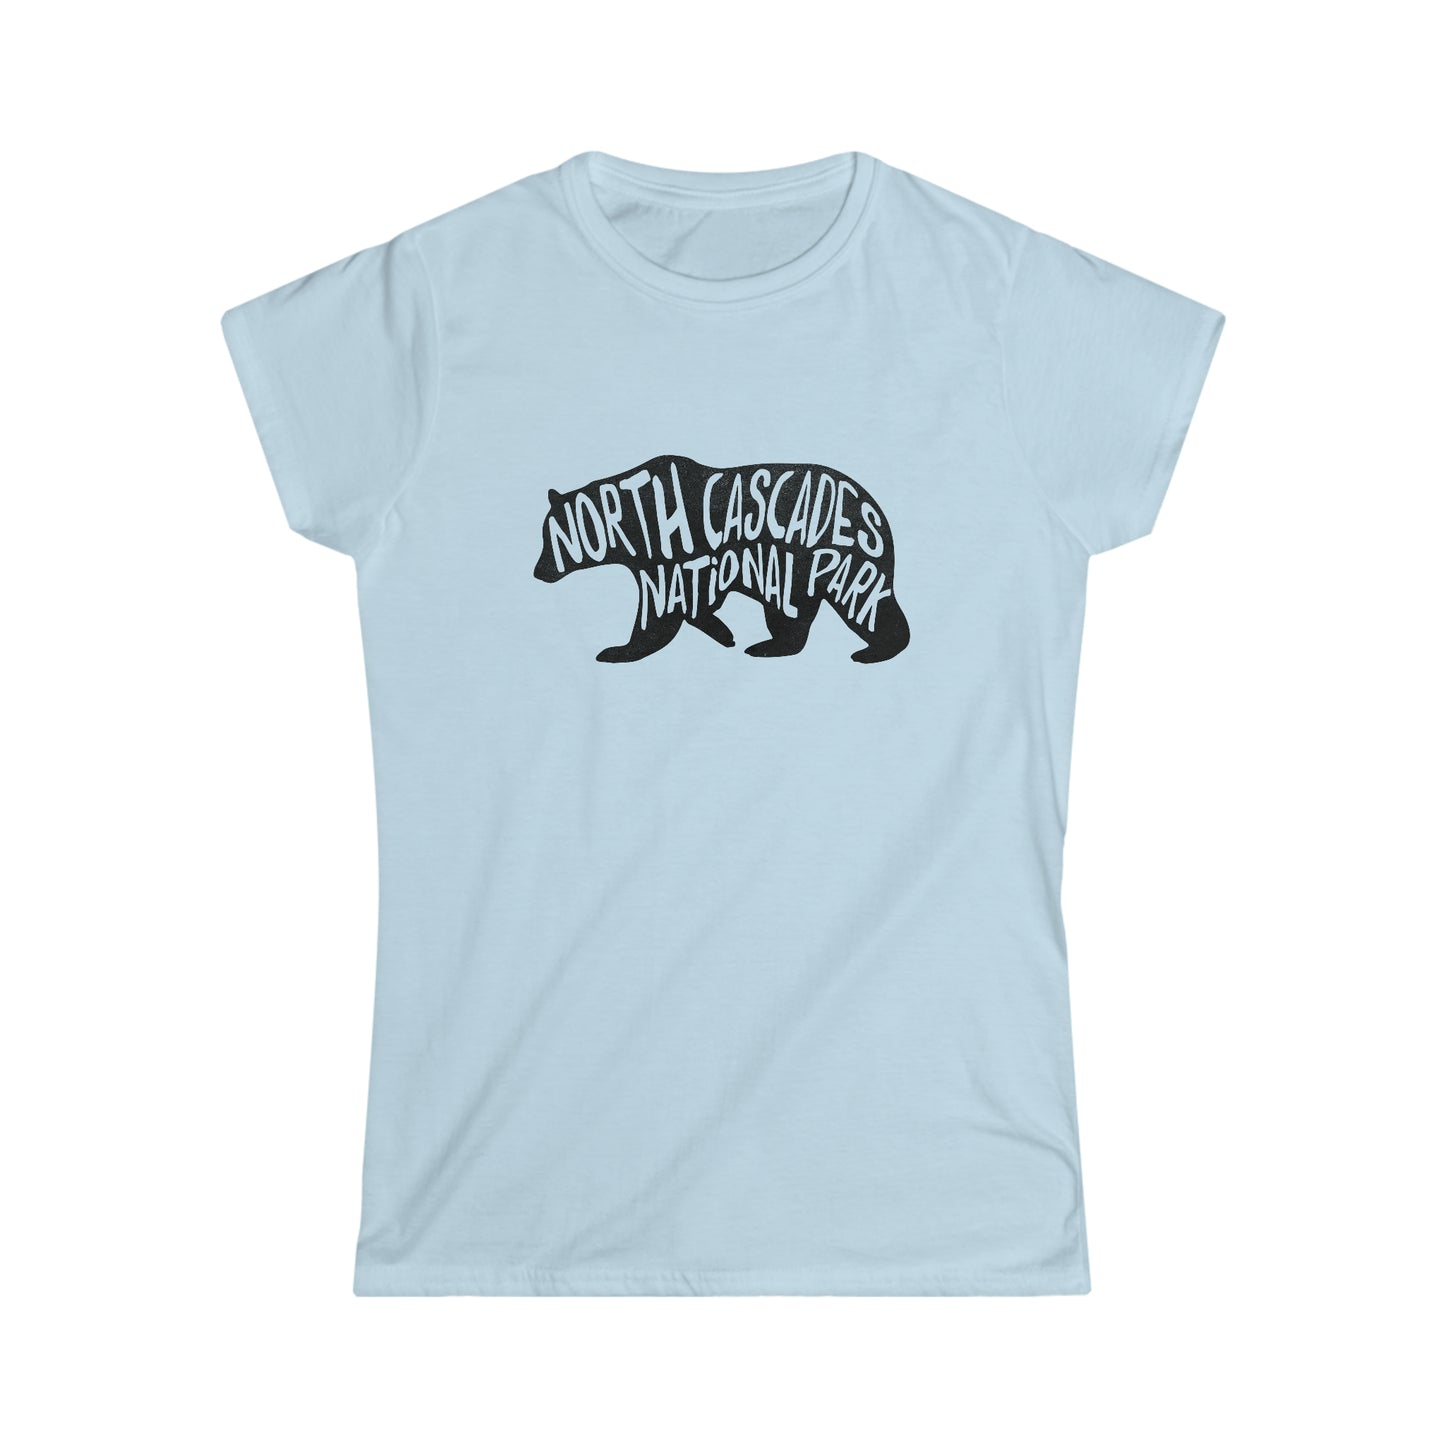 North Cascades National Park Women's T-Shirt - Black Bear